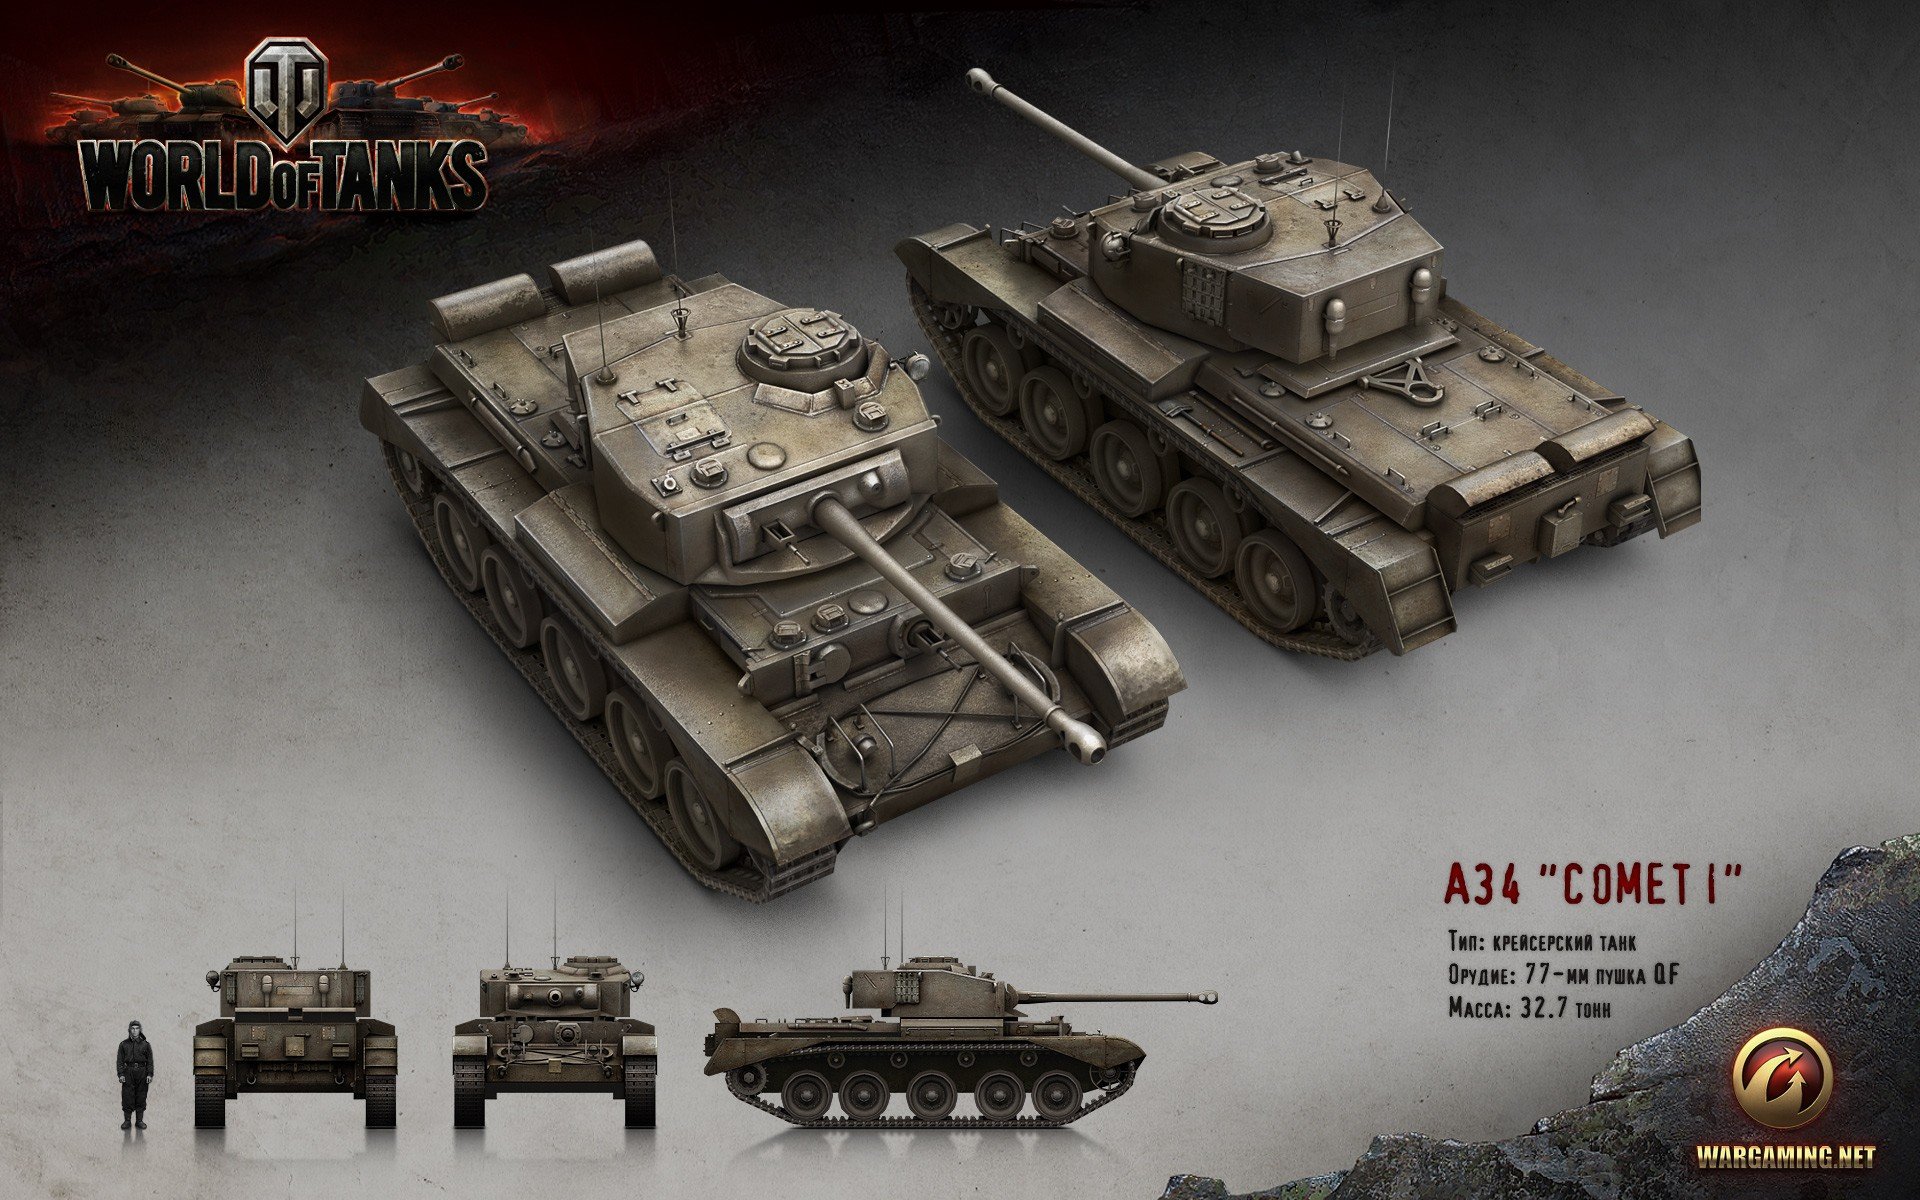 World of Tanks, Tank, Wargaming, Comet 1 Wallpaper